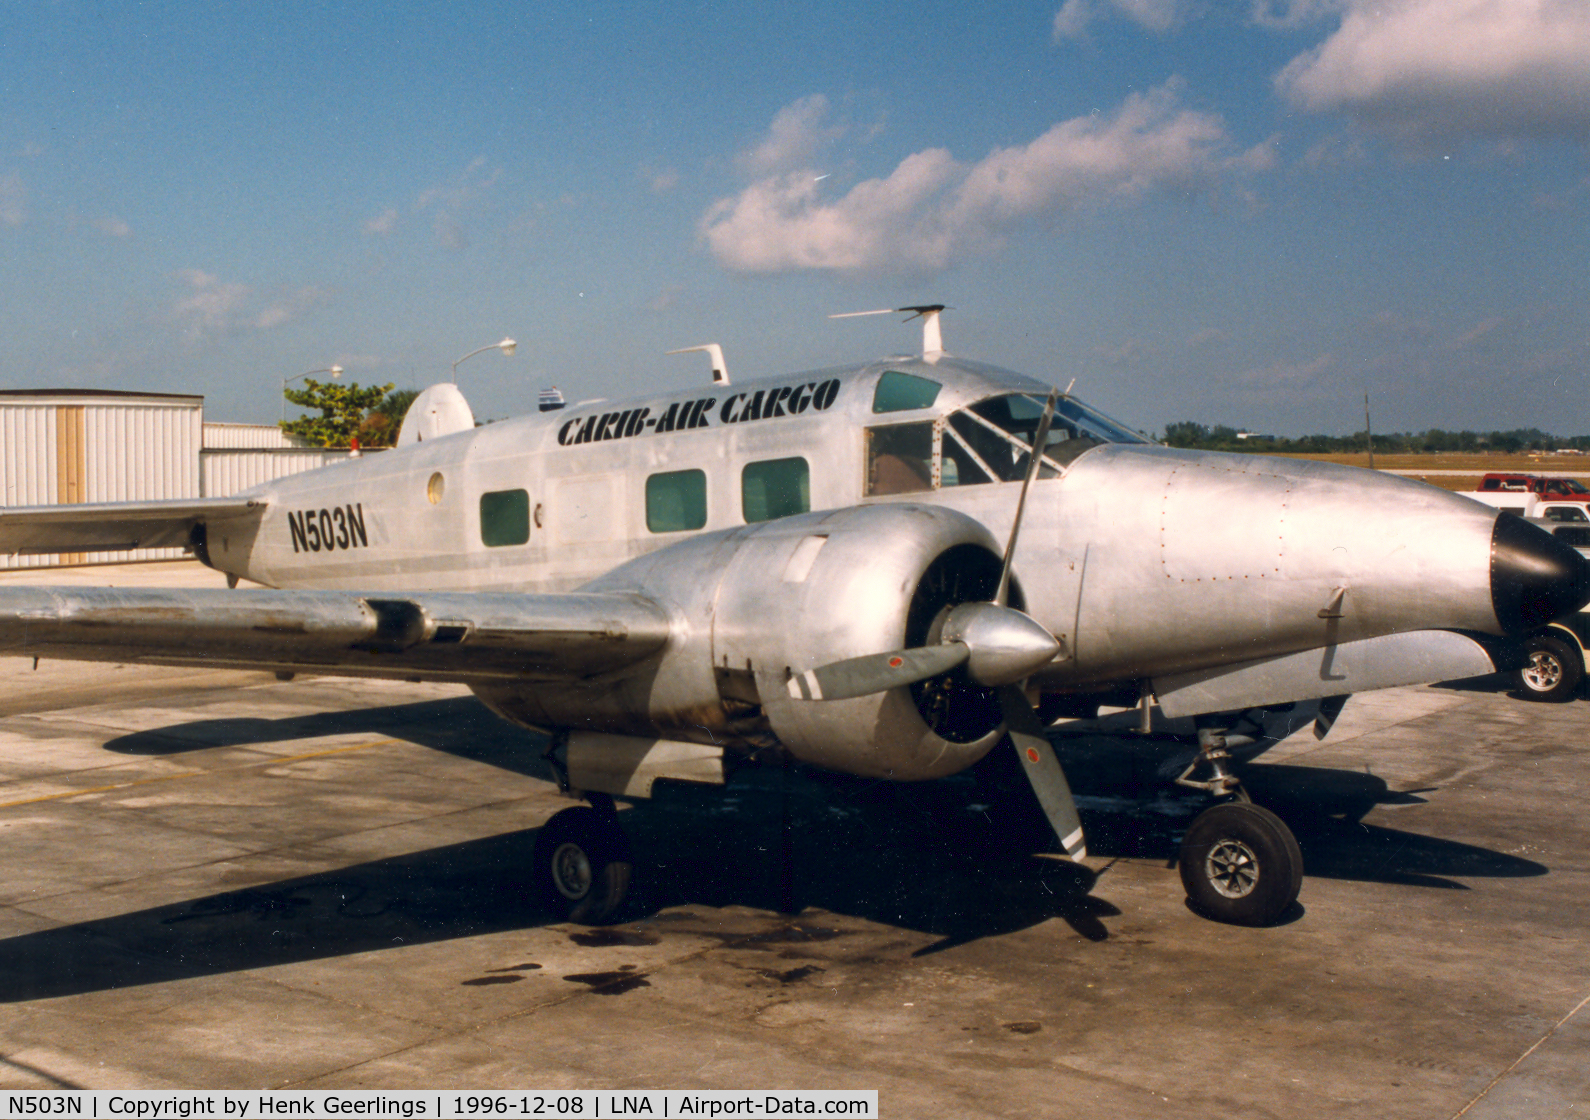 N503N, Beech E18S C/N BA338, Carib-Air Cargo